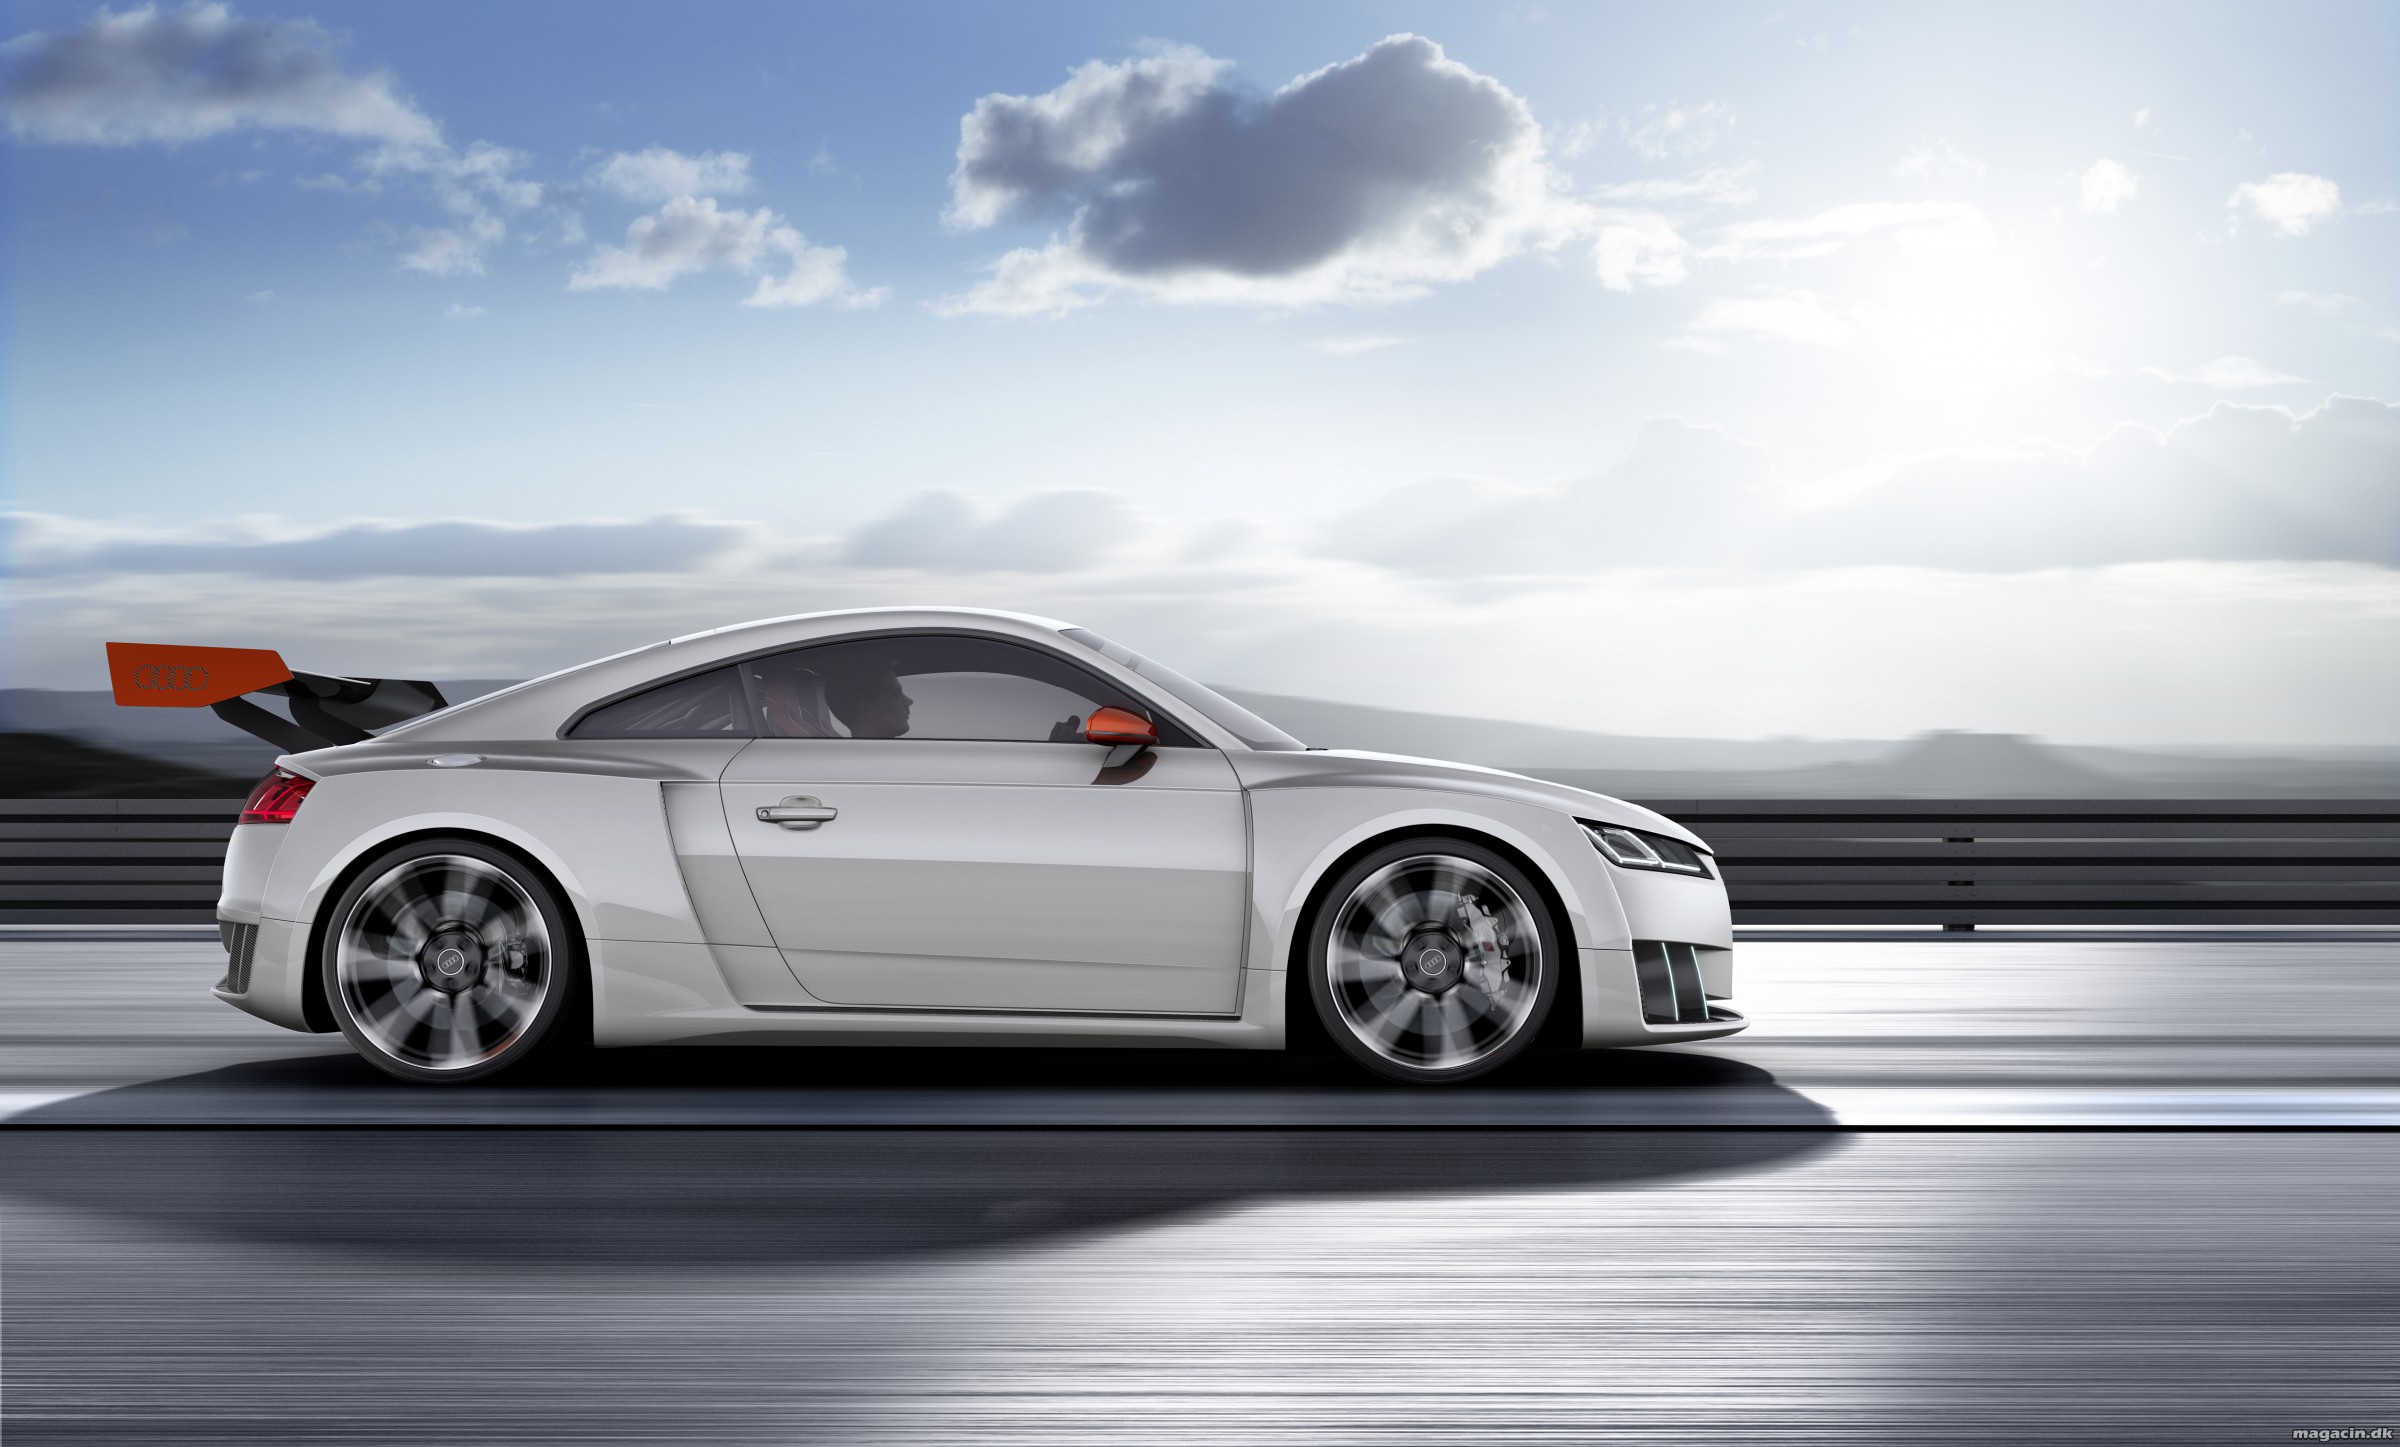 Audi præsenterer teknisk konceptbil